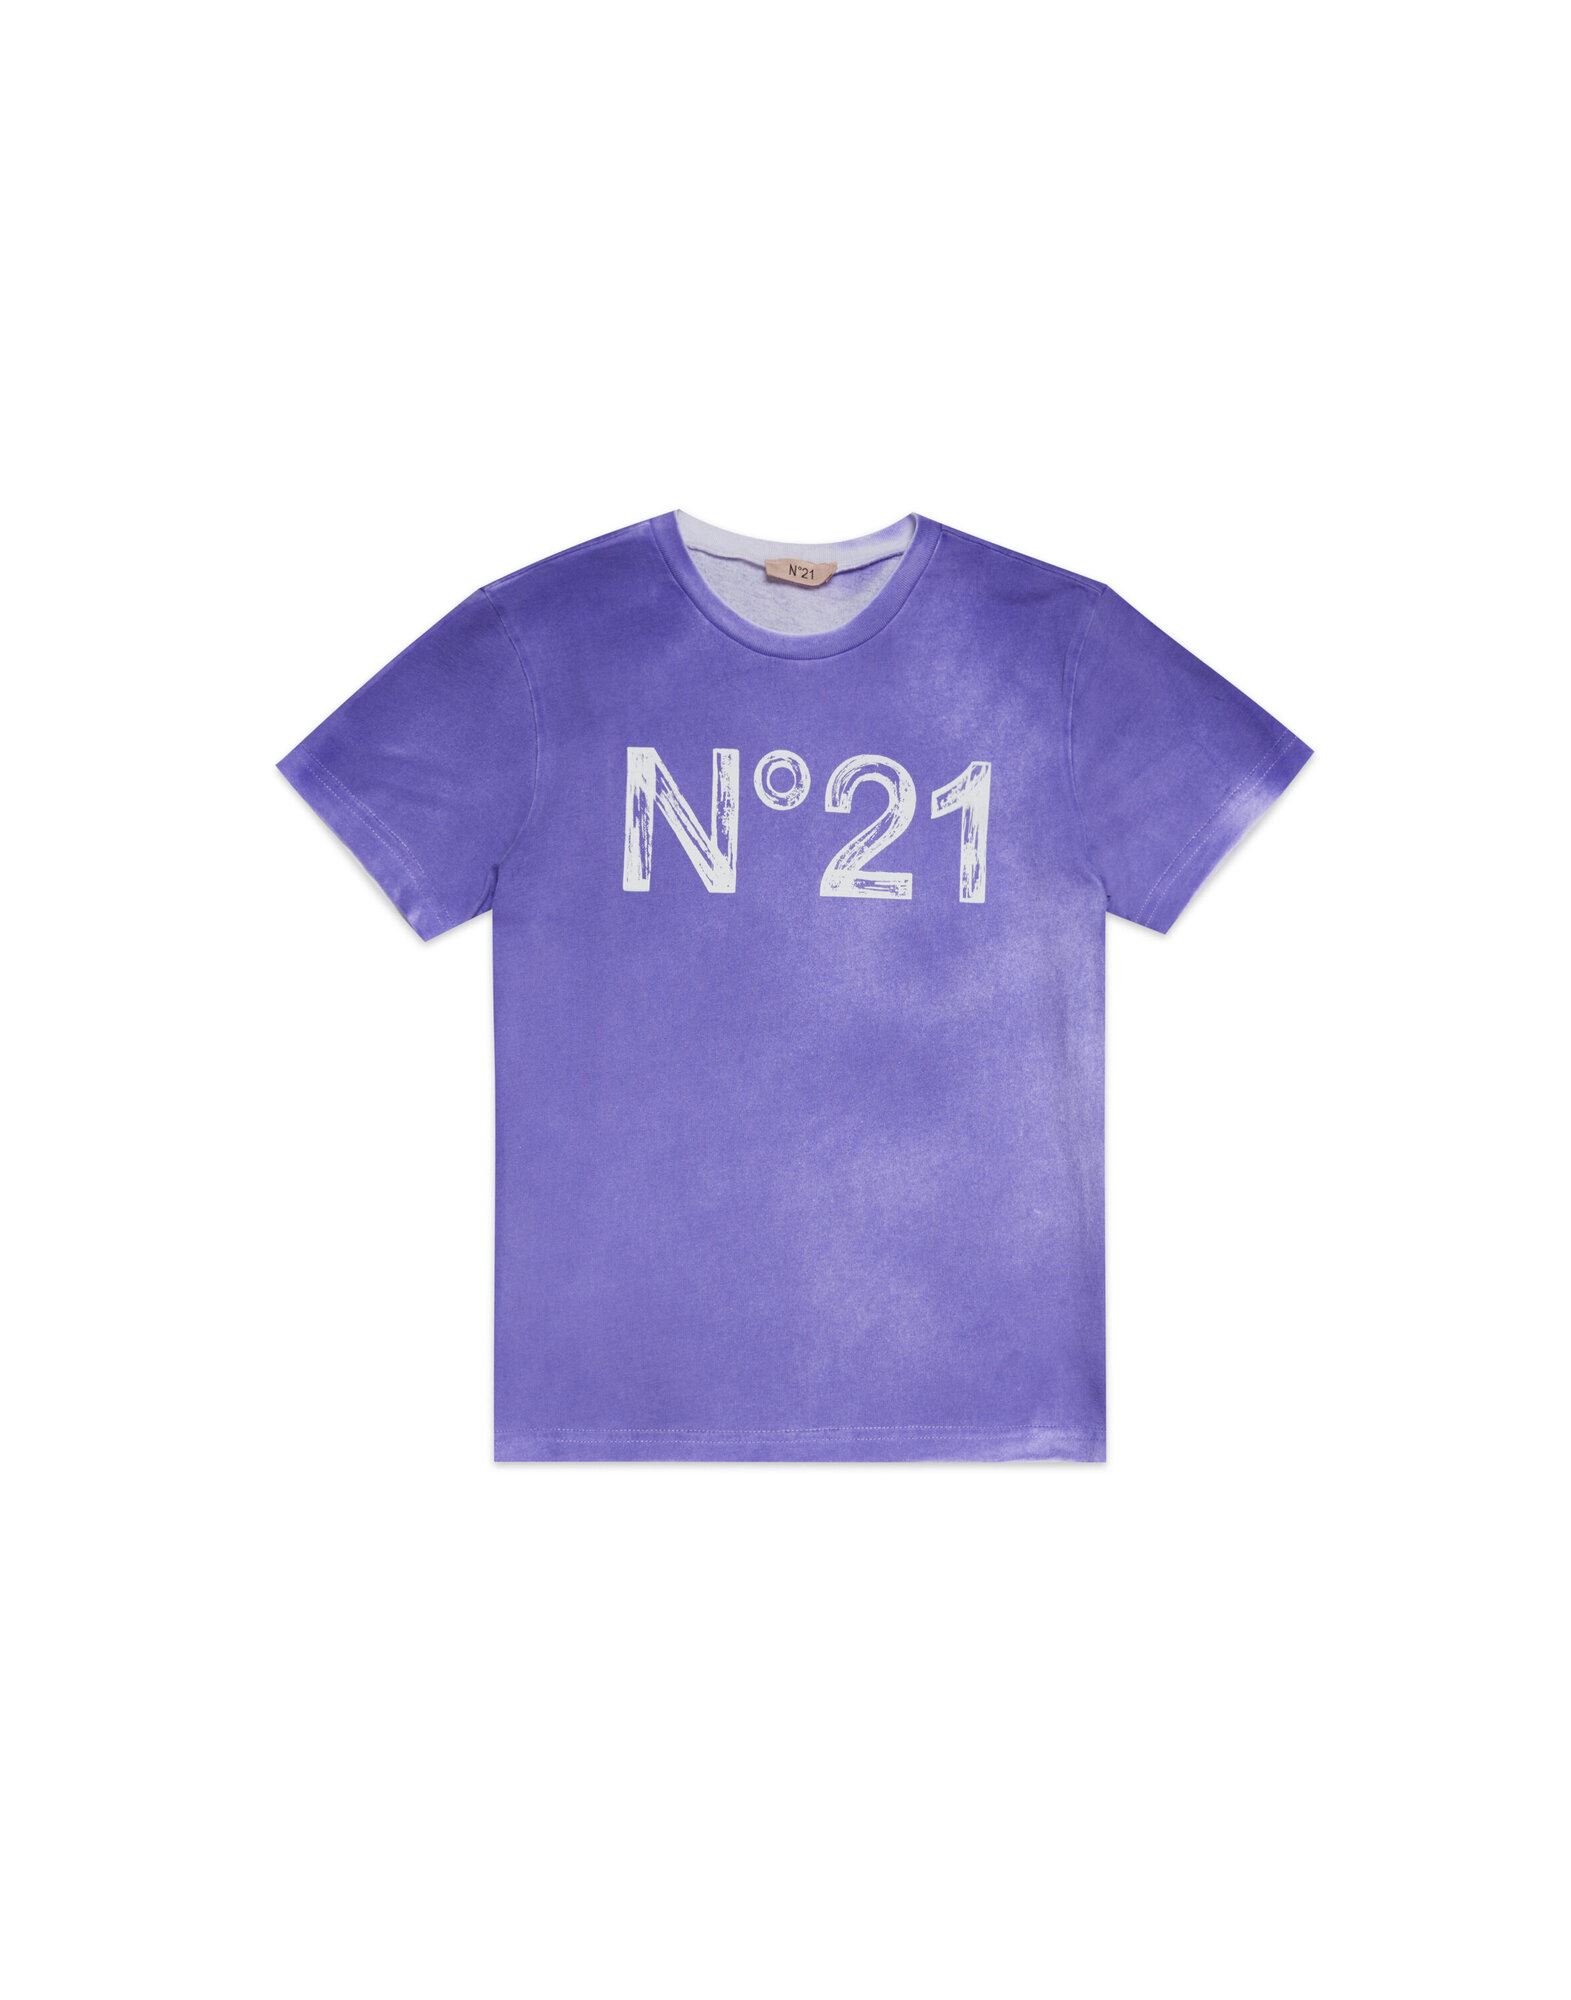 N°21 T-shirts Kinder Violett von N°21